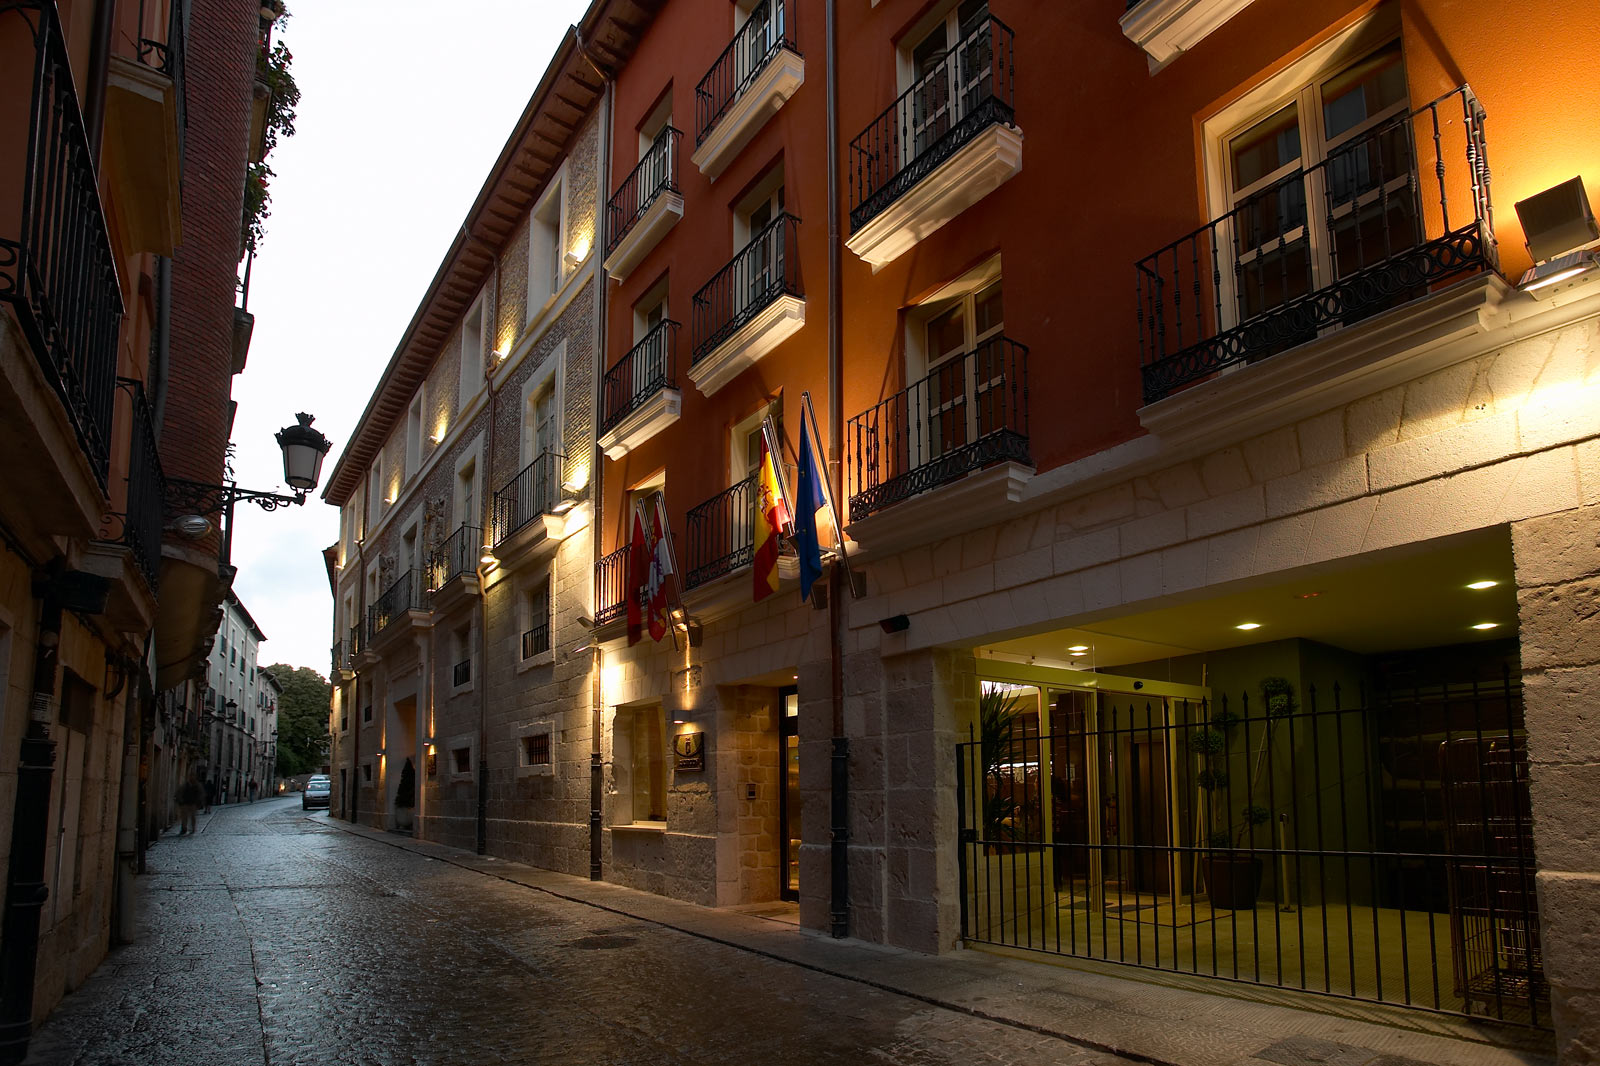 Hotel Rice Palacio de los Blasones, Burgos | Web oficial